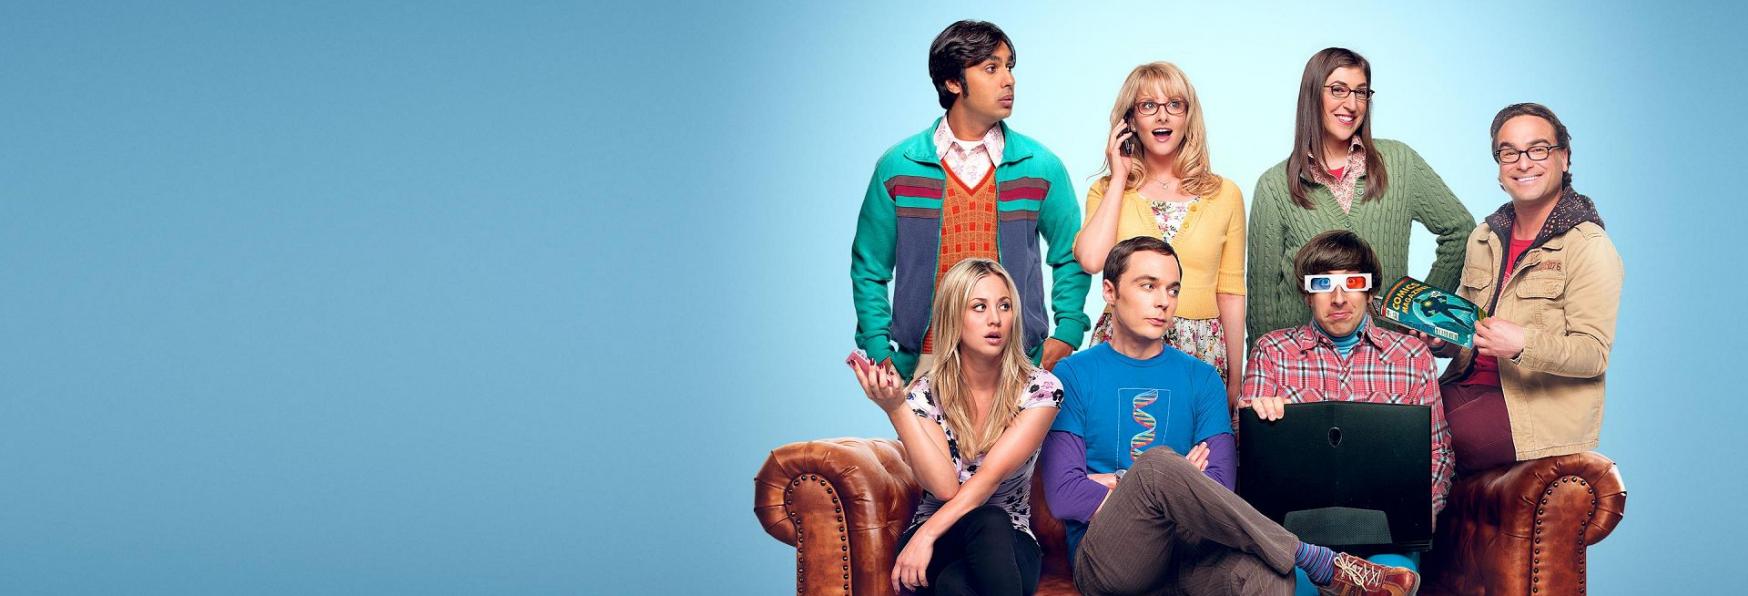 Dieci Curiosità che (forse) non sapevi su The Big Bang Theory, la Serie TV di CBS